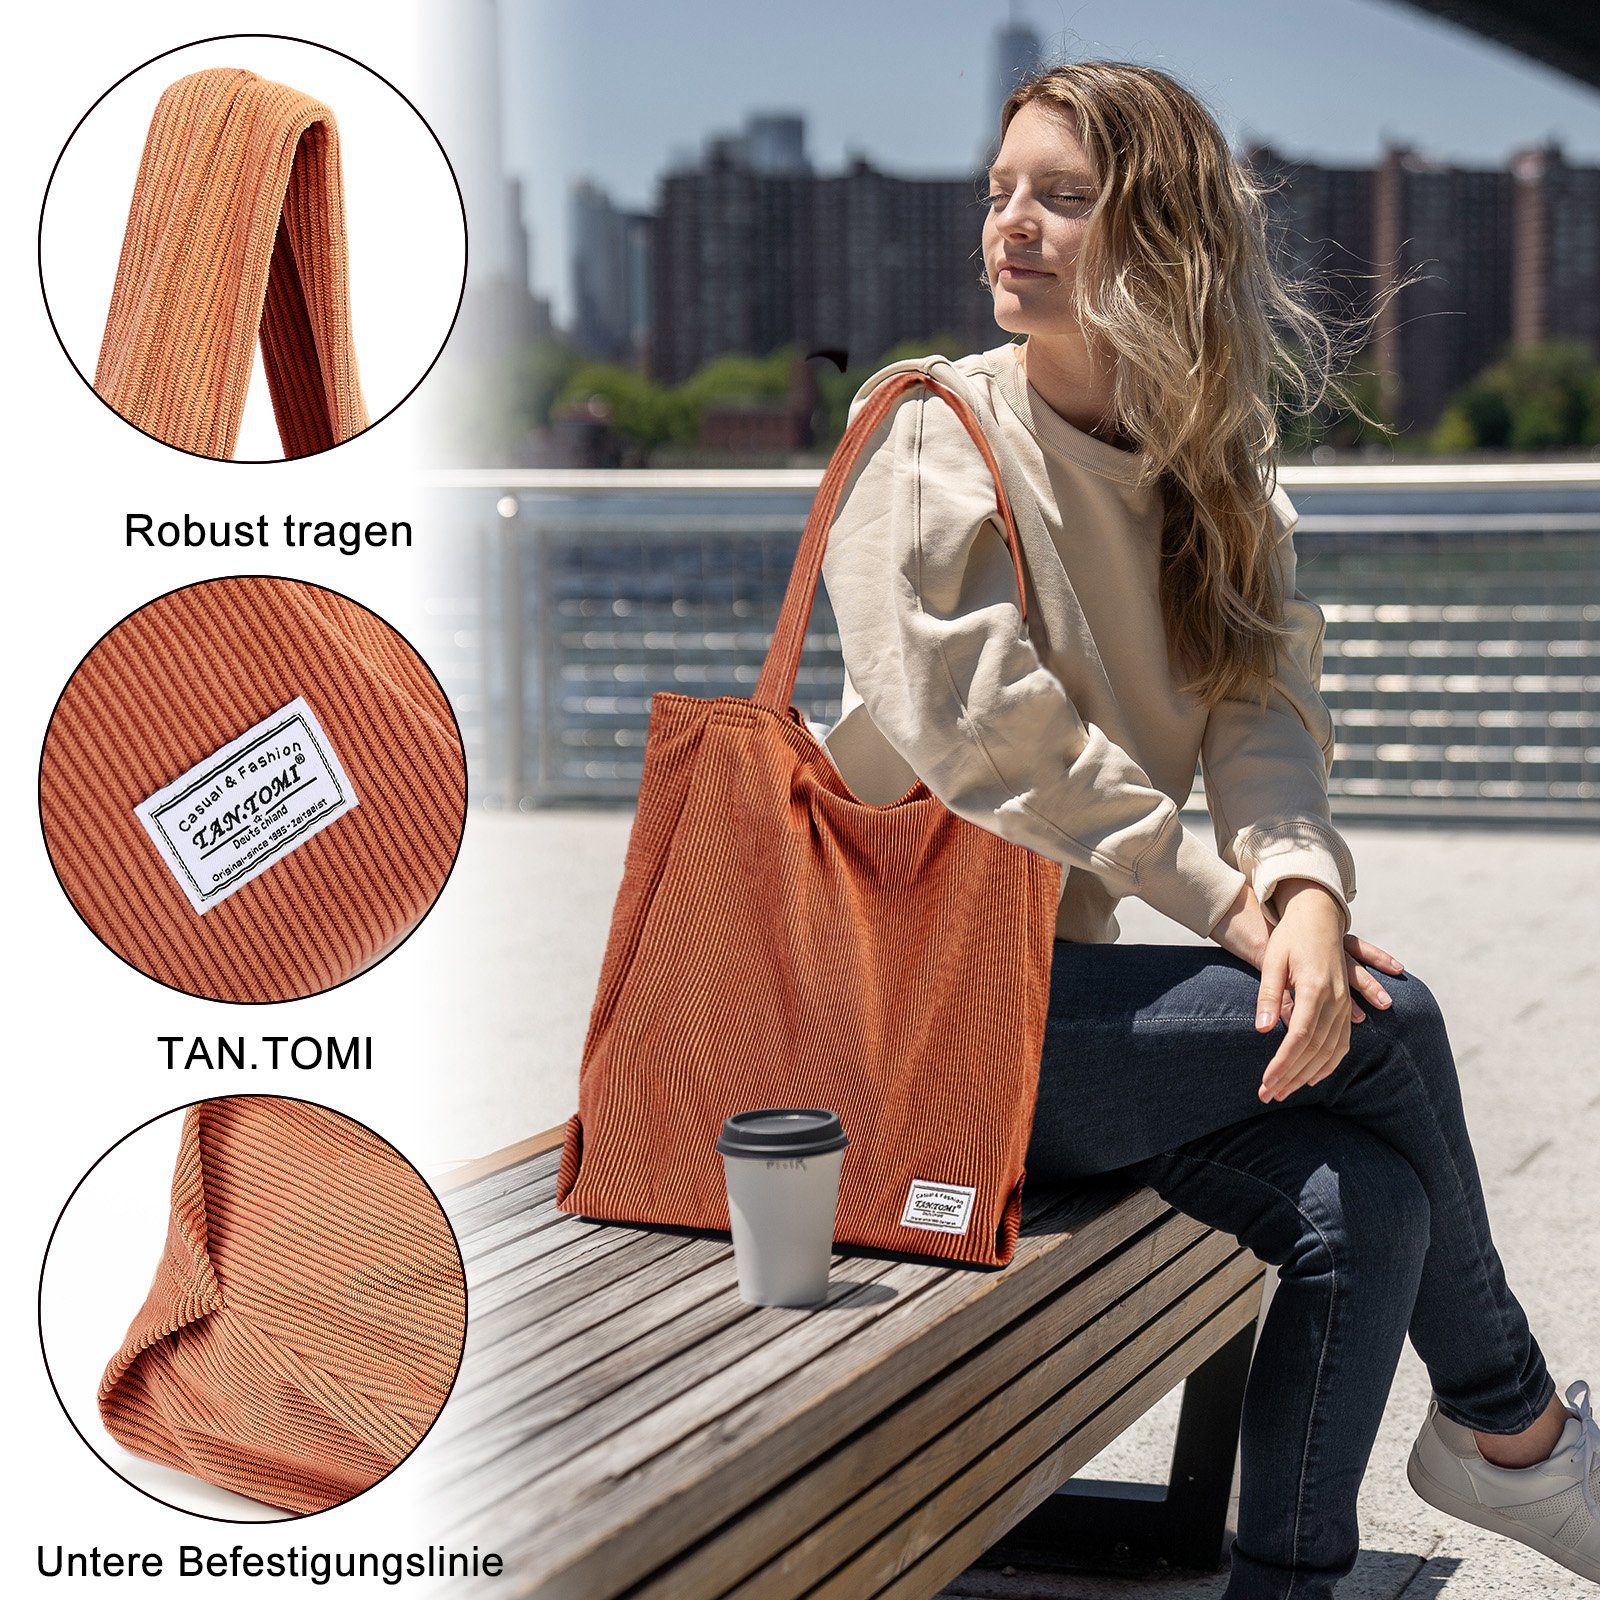 Hellbraun Tasche TAN.TOMI Umhängetasche Reißverschluss, mit Bag Tasche Tote Shopper Handtasche Damen Schultertaschen Einkaufsbeutel Groß